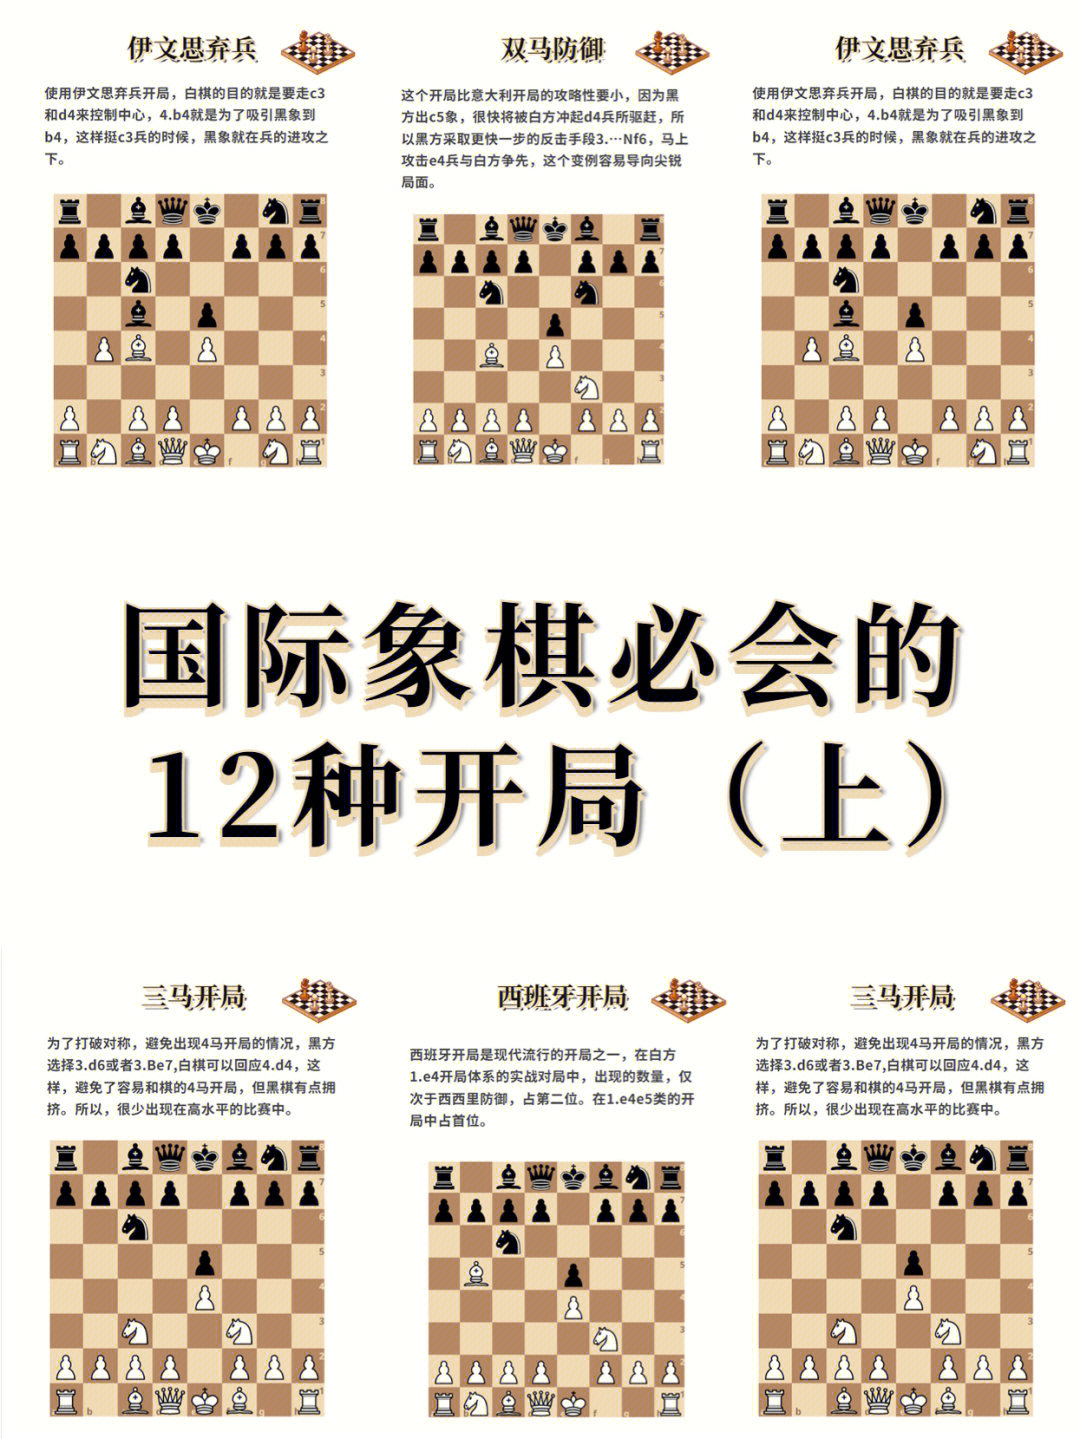 国际象棋36种杀法图片